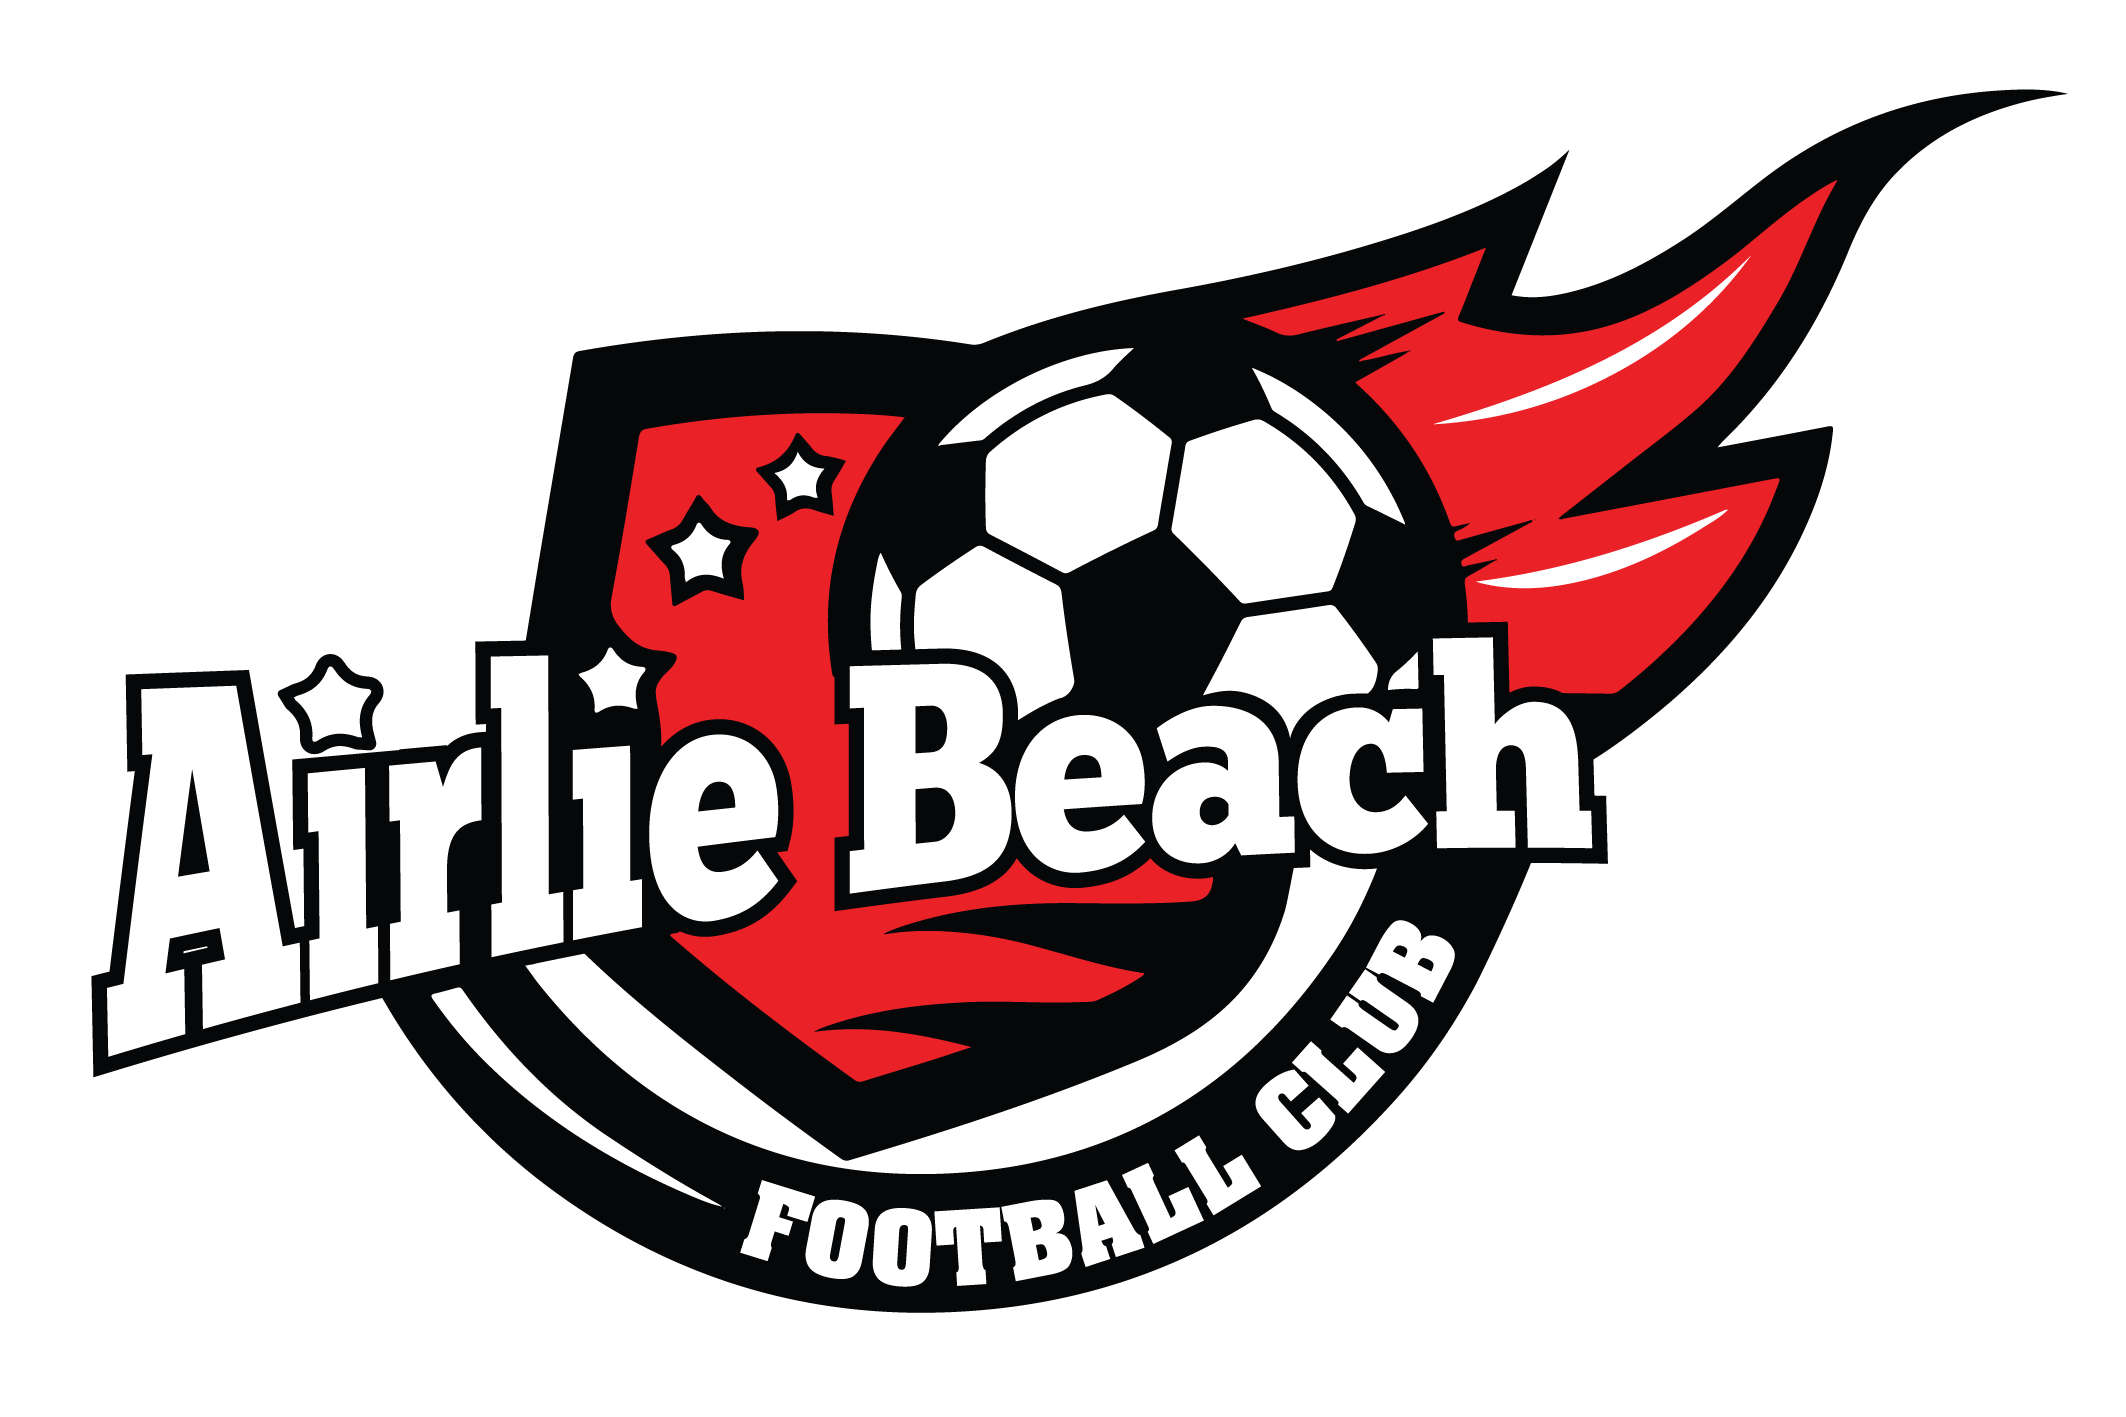 Airlie Beach Football Club Logo